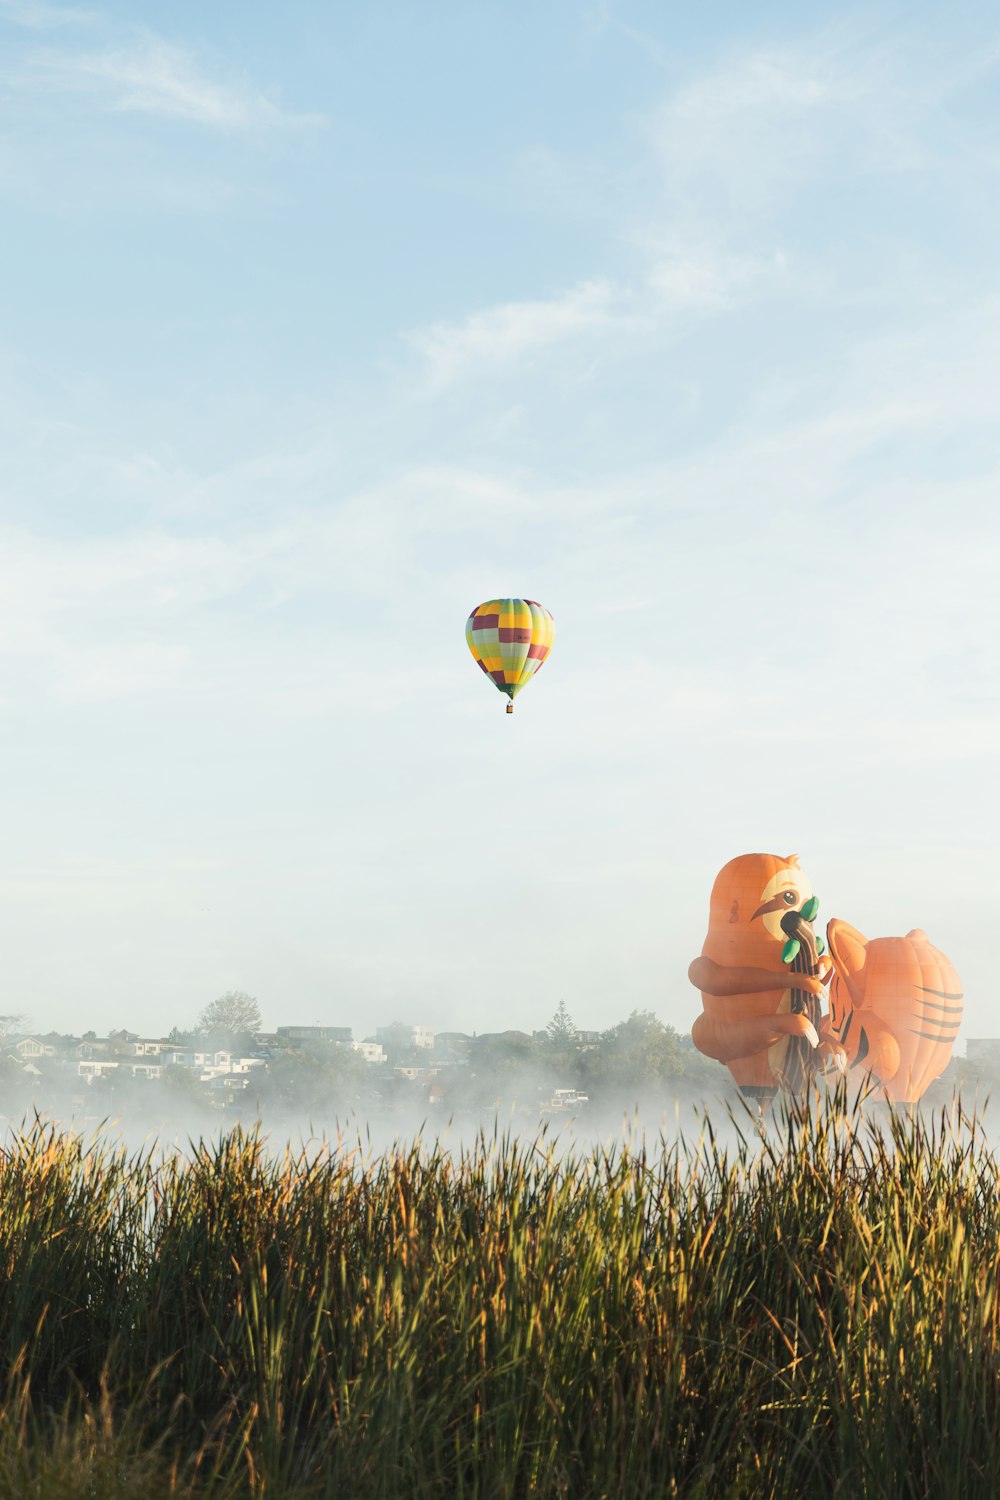 Un couple de montgolfières survolant un champ verdoyant